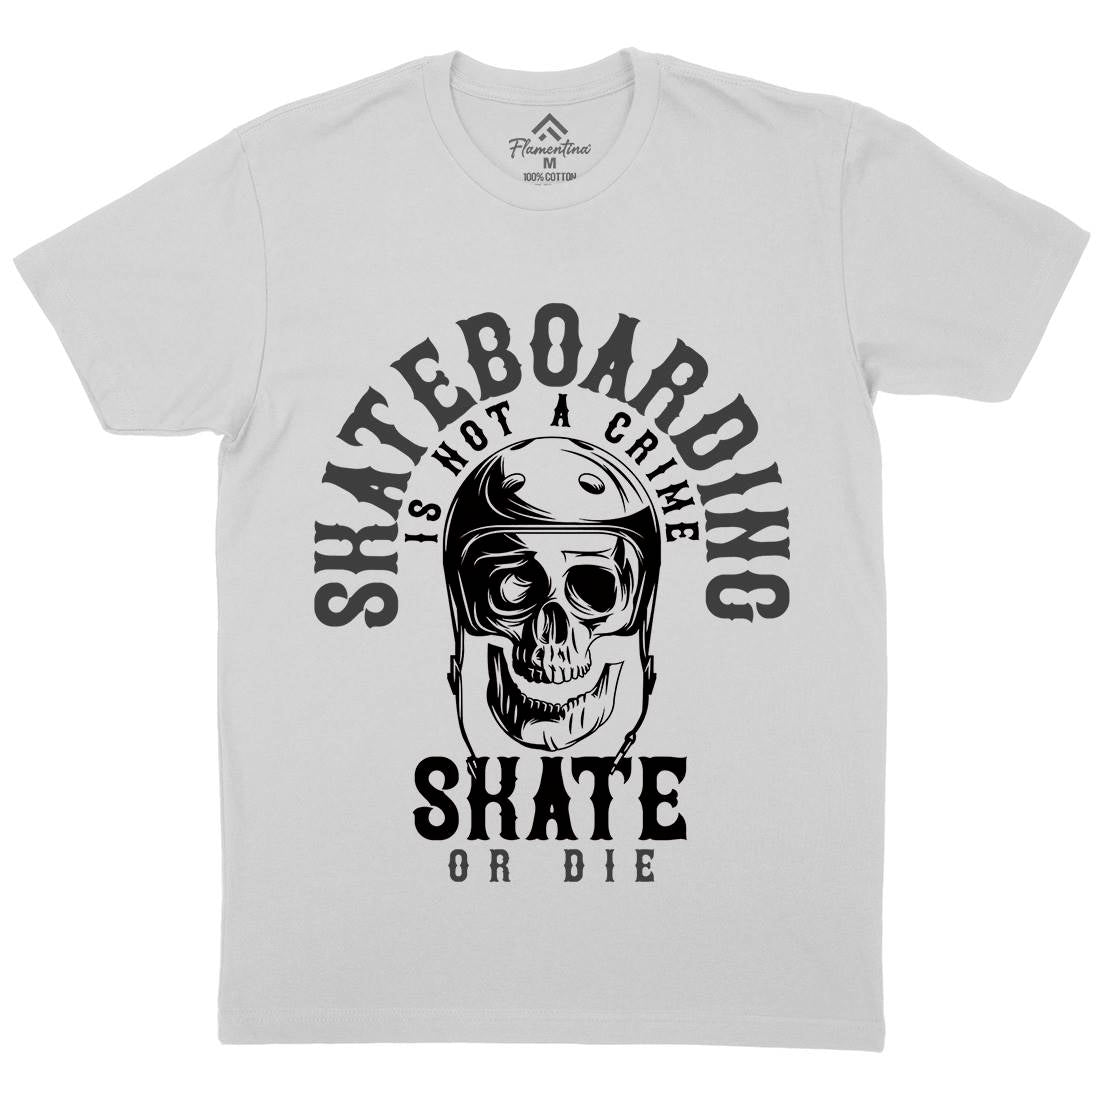 Skater Mens Crew Neck T-Shirt Skate B340